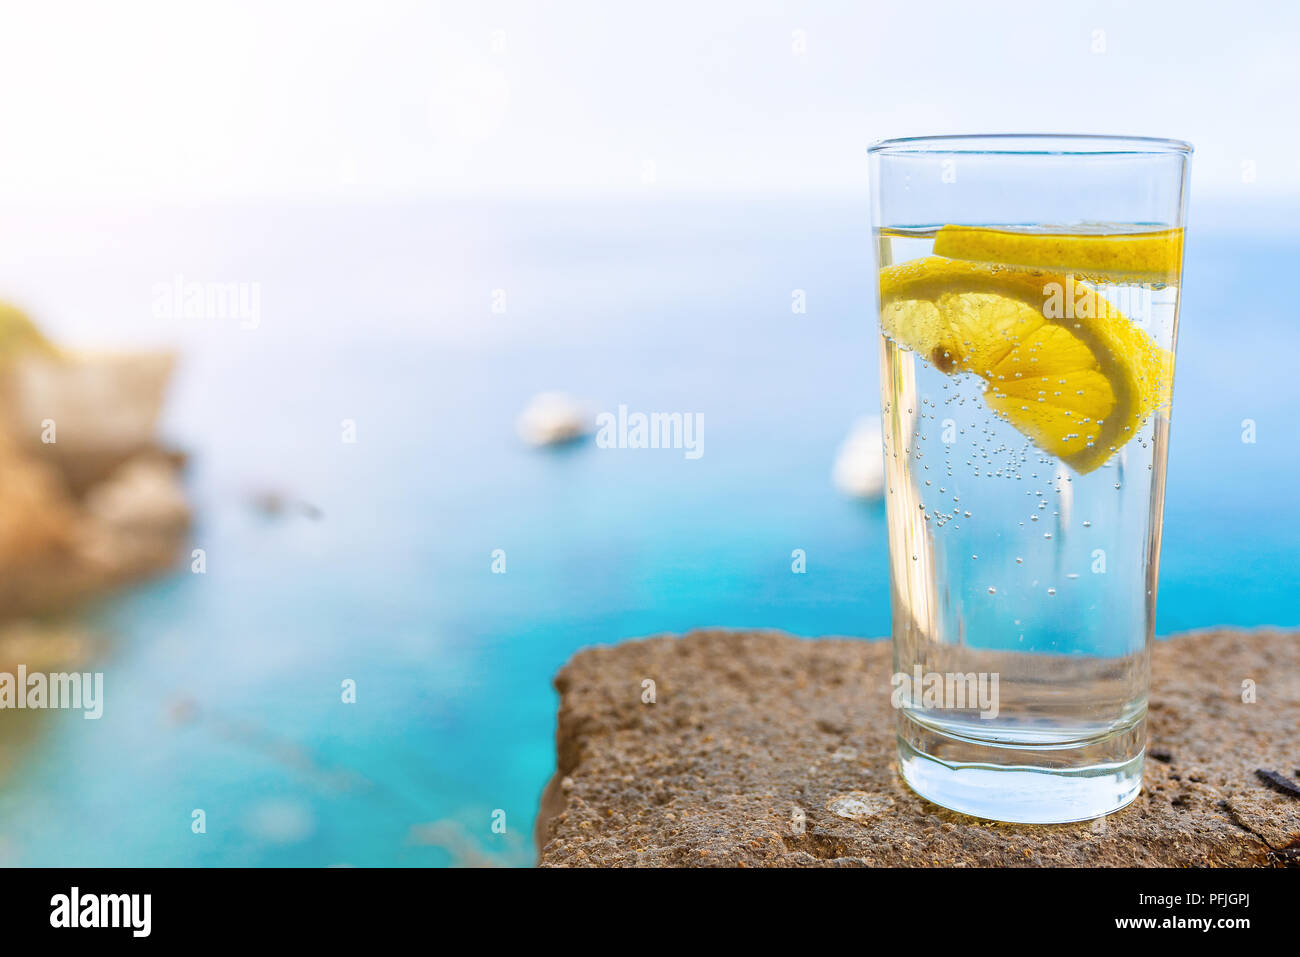 Vaso con agua carbonatada fría o refresco y la rodaja de limón contra el azul del cielo y del mar Foto de stock